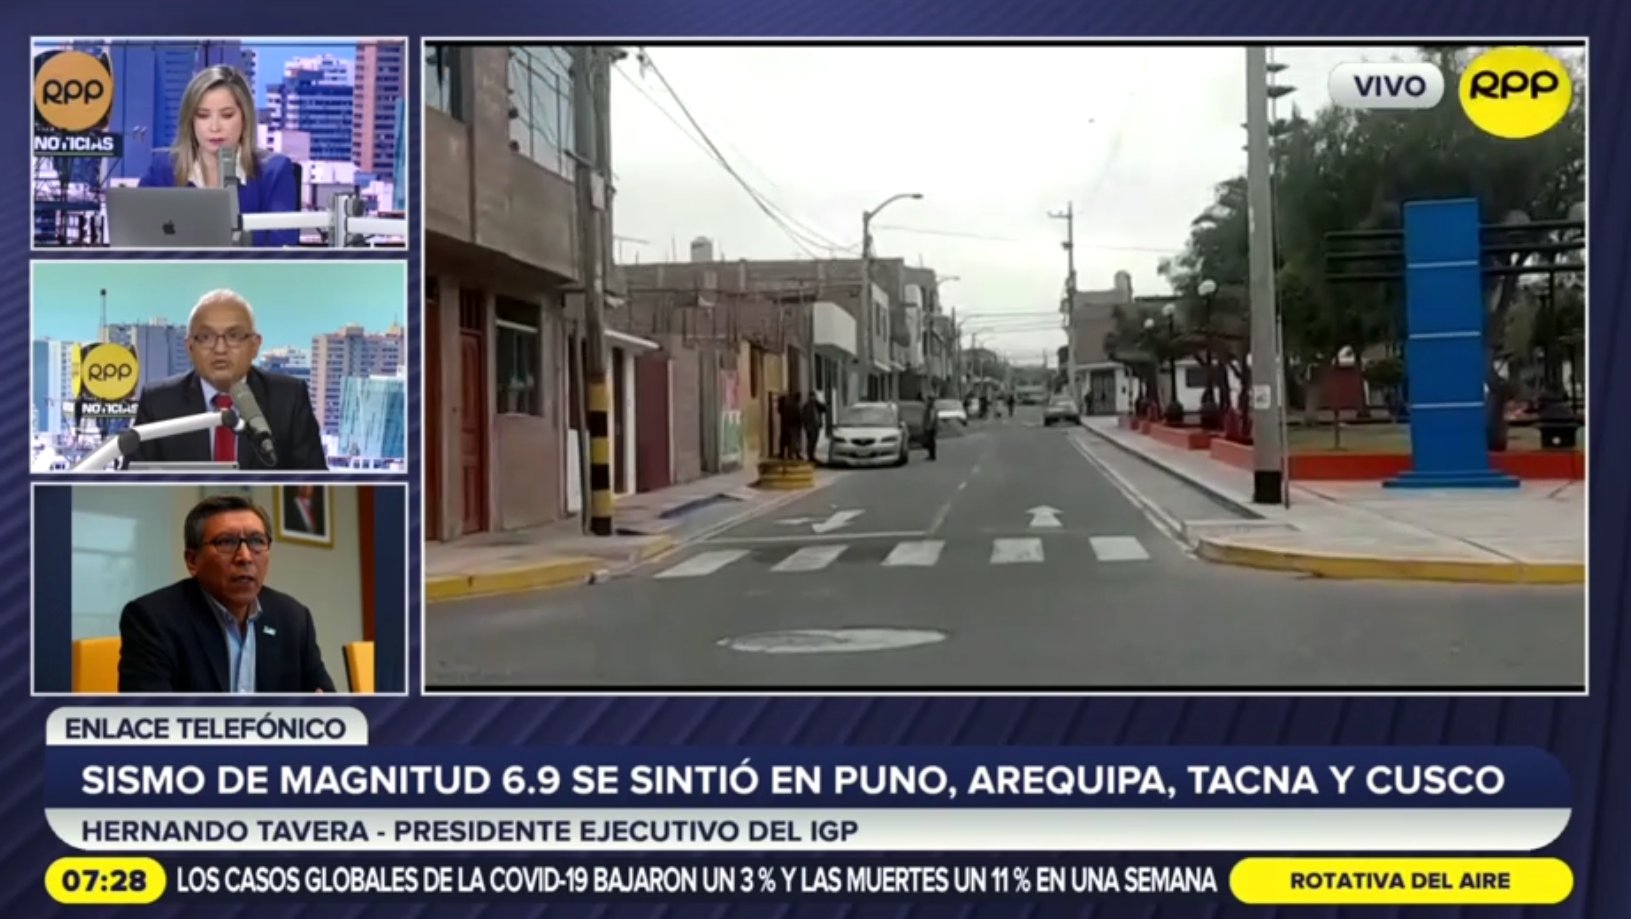 Sismo en Puno: No hay reporte de daños graves hasta el momento, según Hernando Tavera del IGP